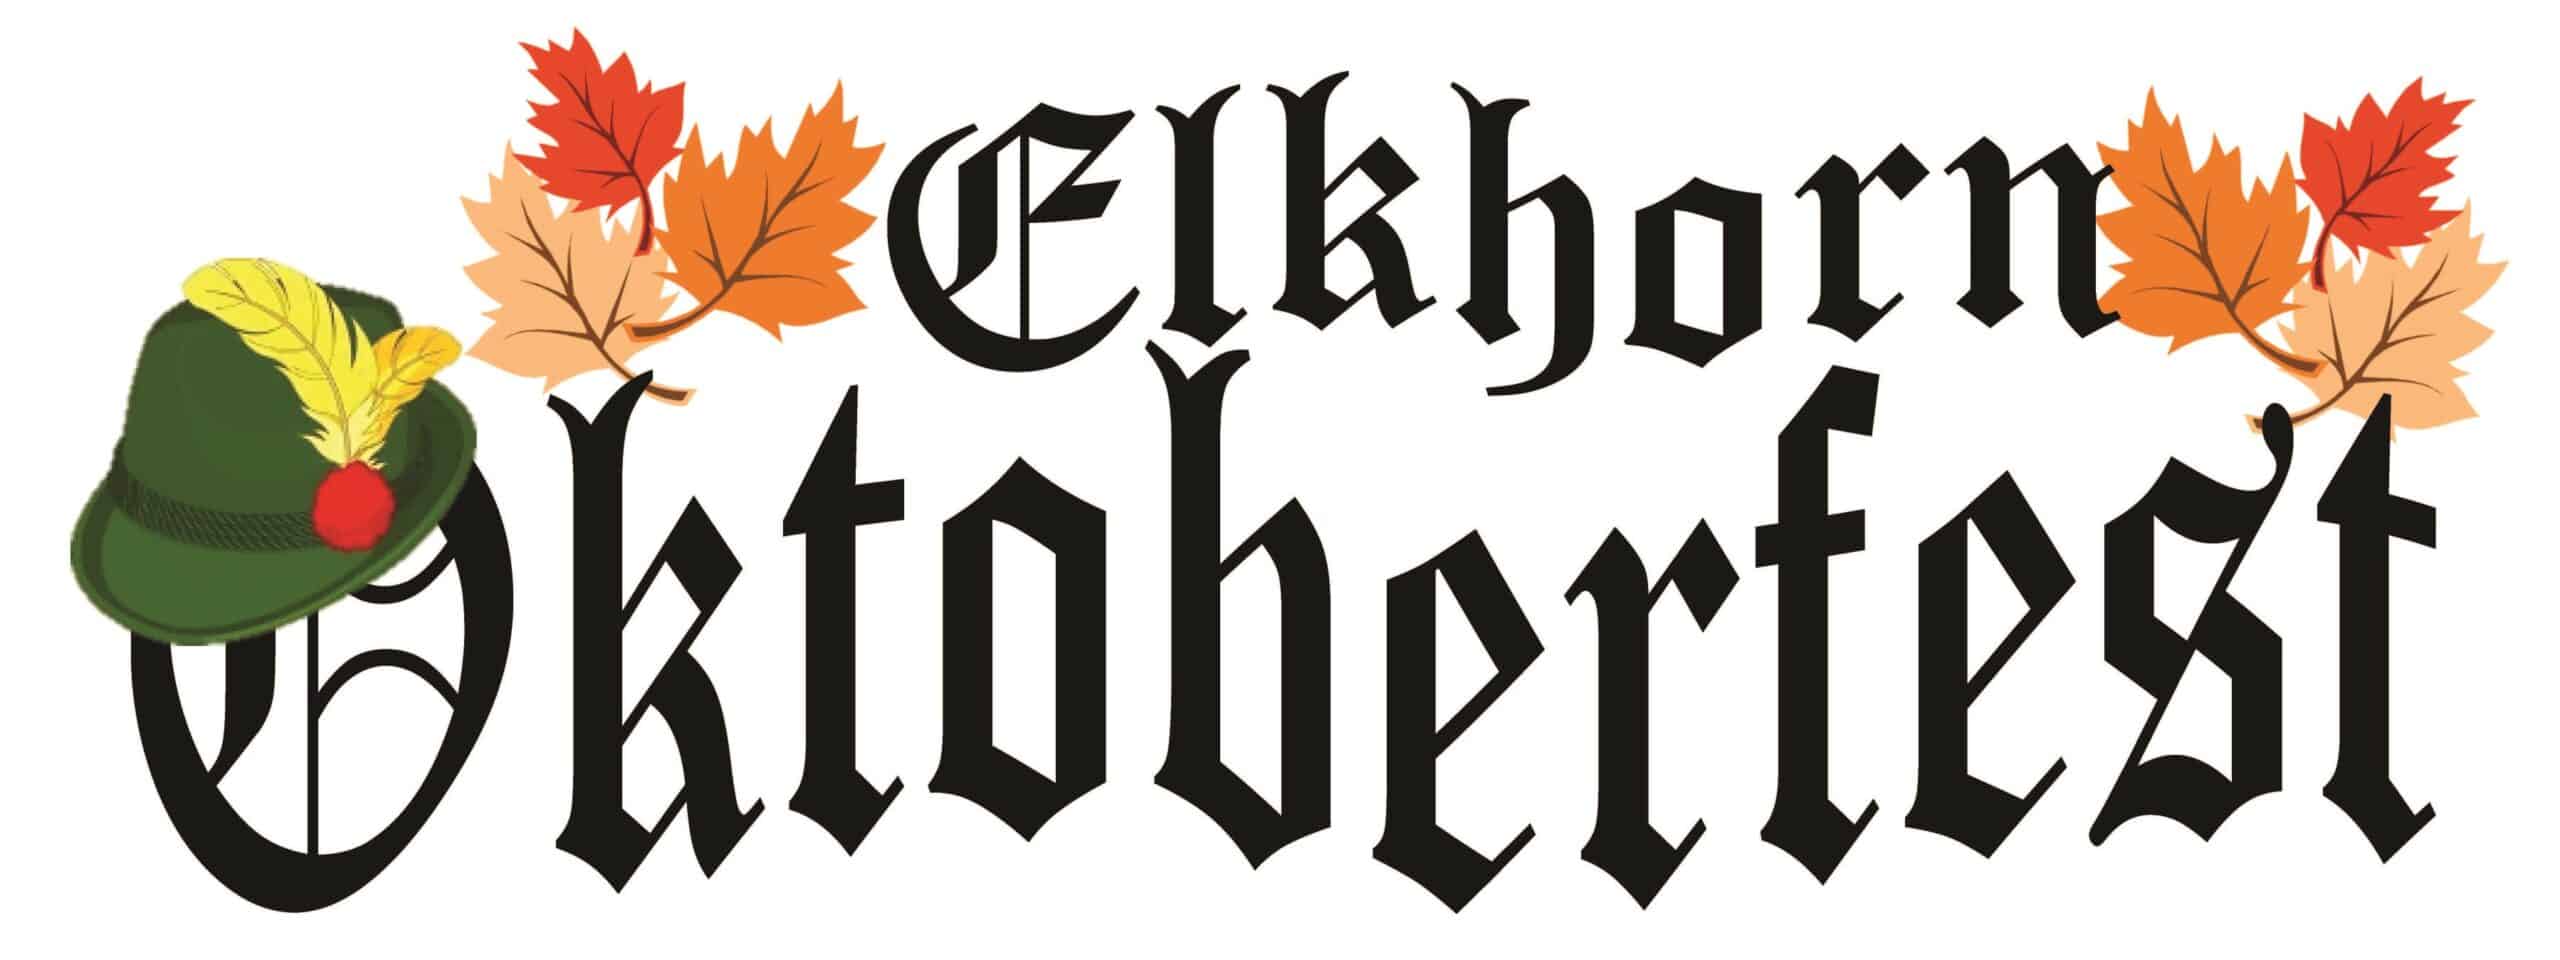 Elkhorn Oktoberfest